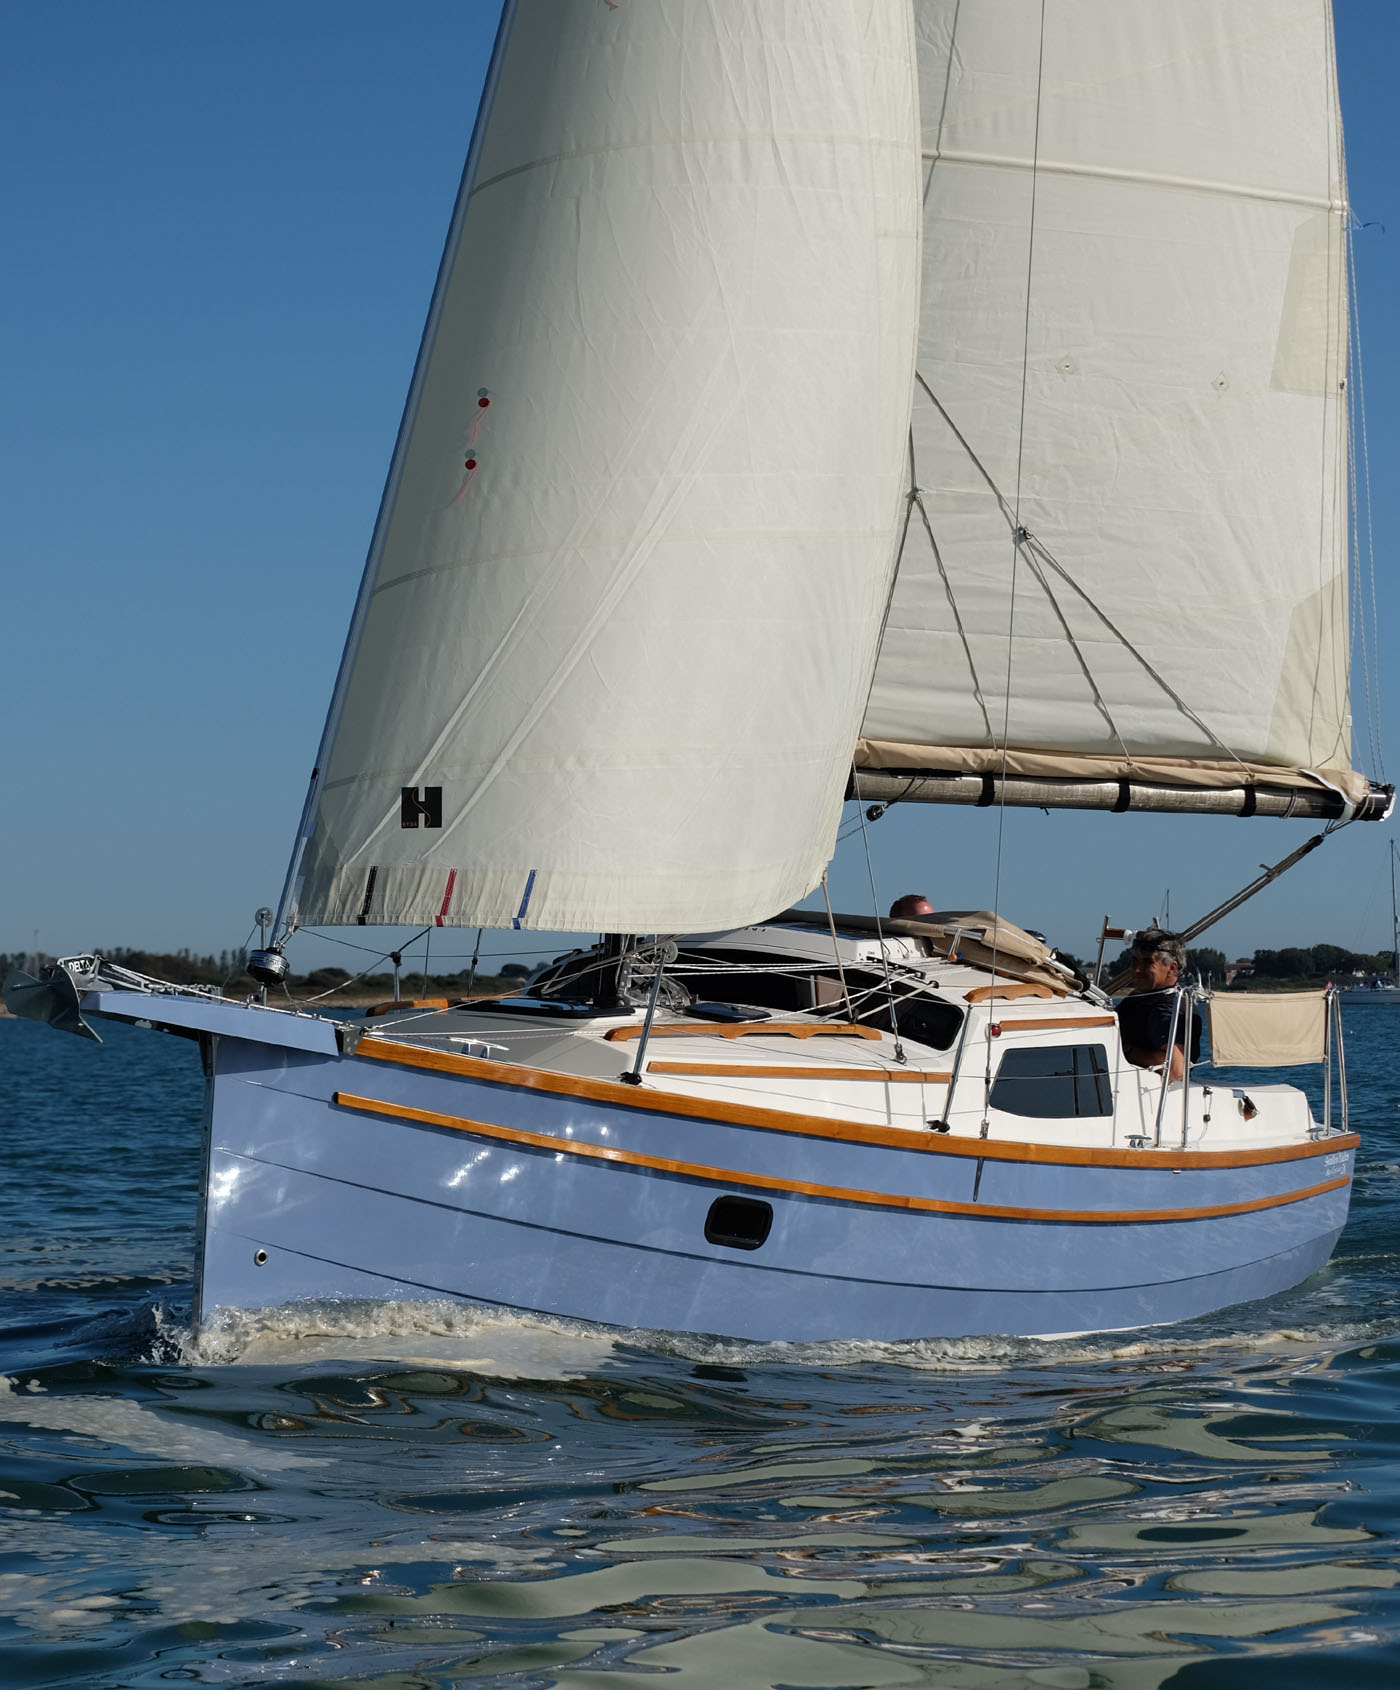 baycruiser 26 sailboat for sale